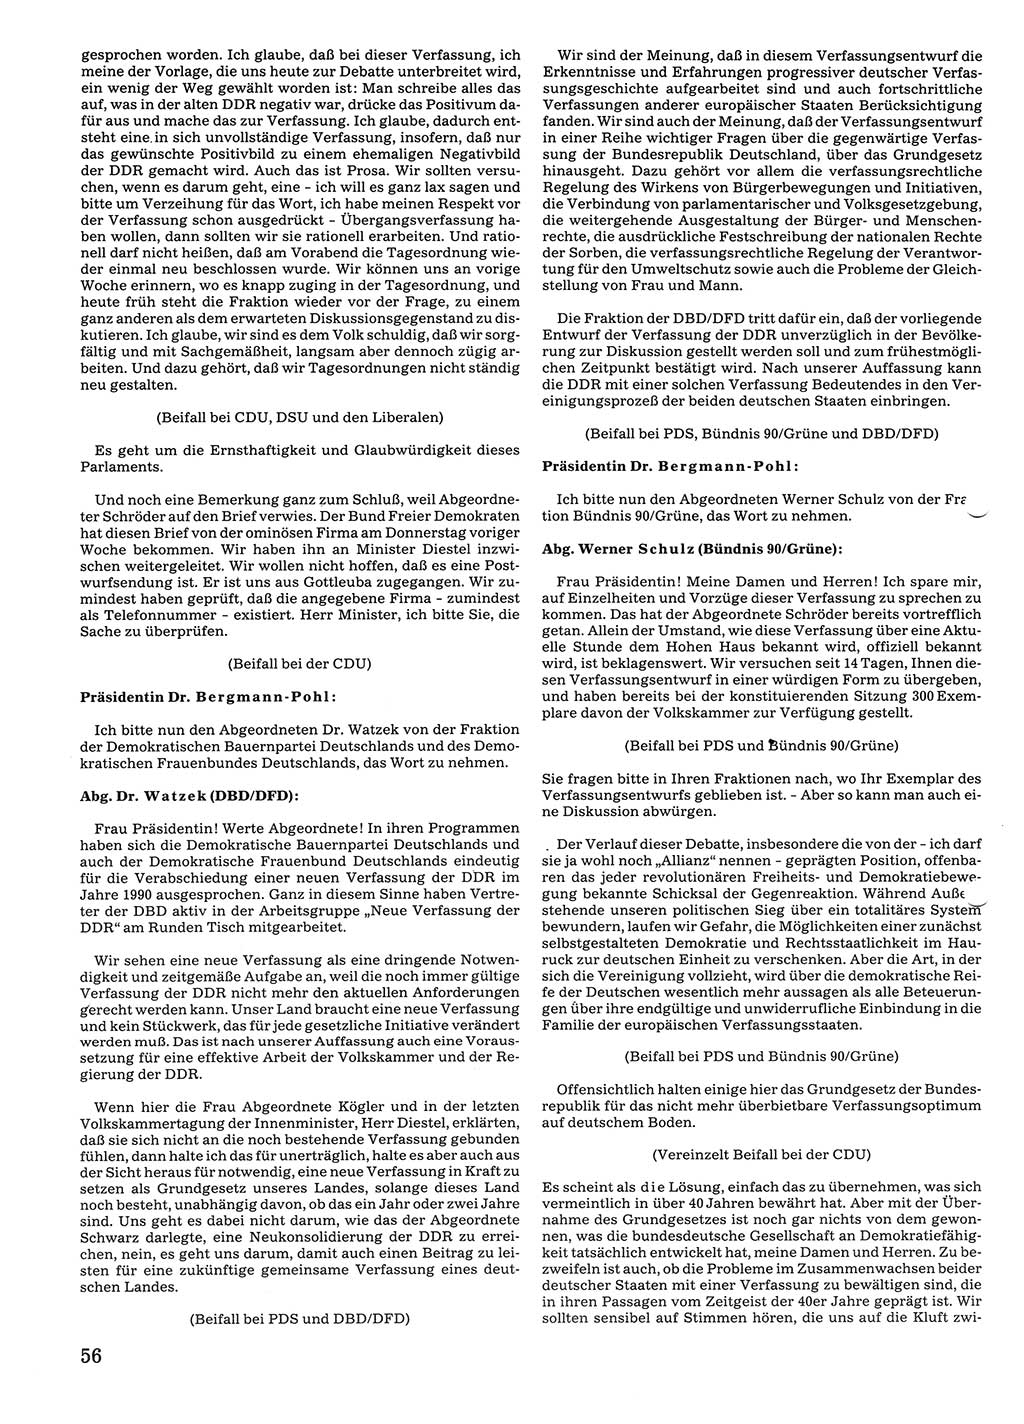 Tagungen der Volkskammer (VK) der Deutschen Demokratischen Republik (DDR), 10. Wahlperiode 1990, Seite 56 (VK. DDR 10. WP. 1990, Prot. Tg. 1-38, 5.4.-2.10.1990, S. 56)